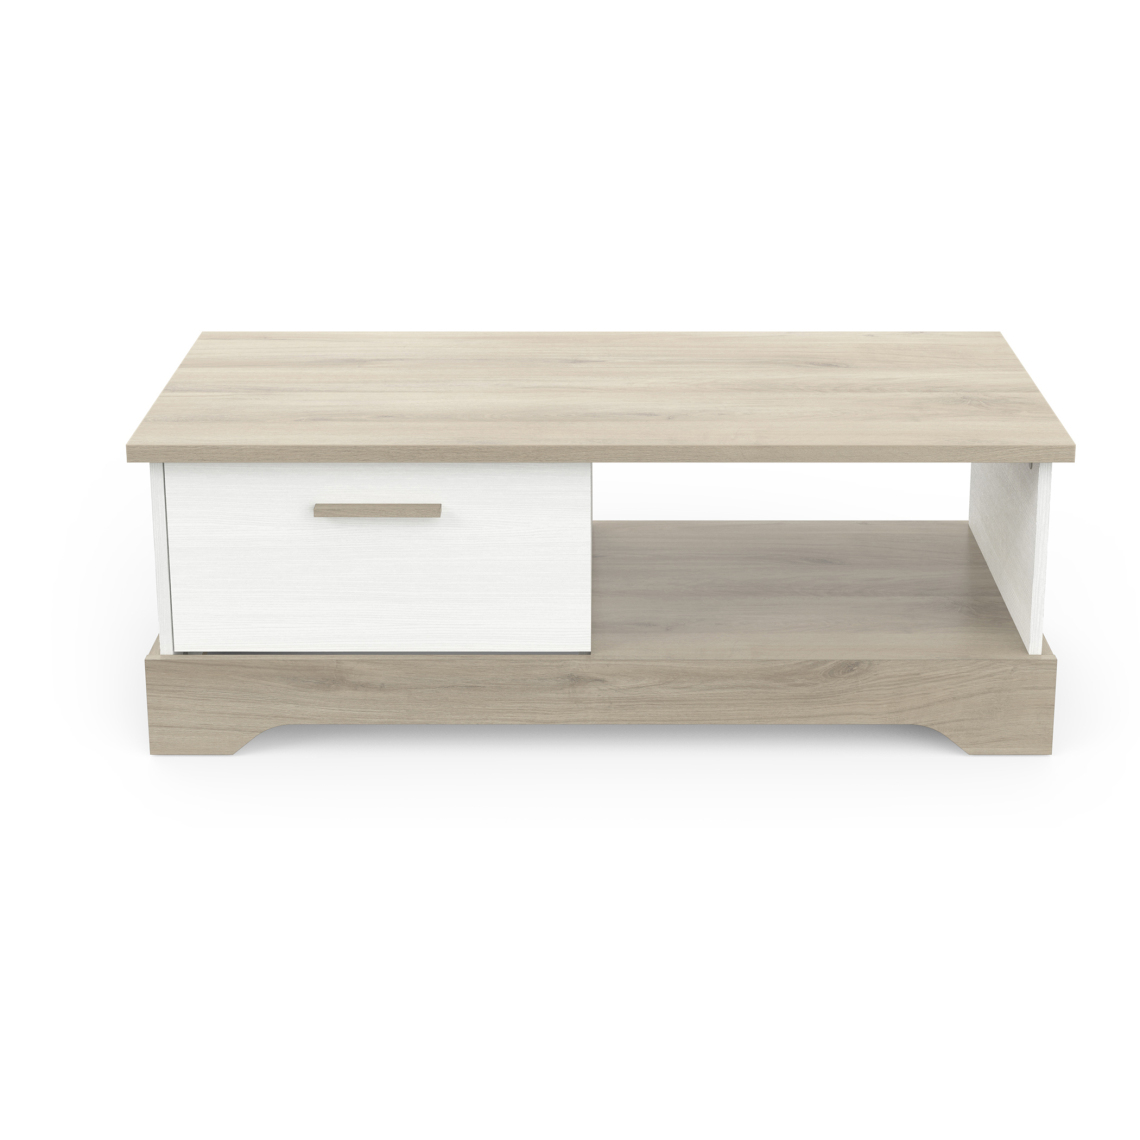 Pegane - Table basse coloris chêne kronberg / blanc - longueur 110 x profondeur 49,8 x hauteur 40 cm - Tables basses